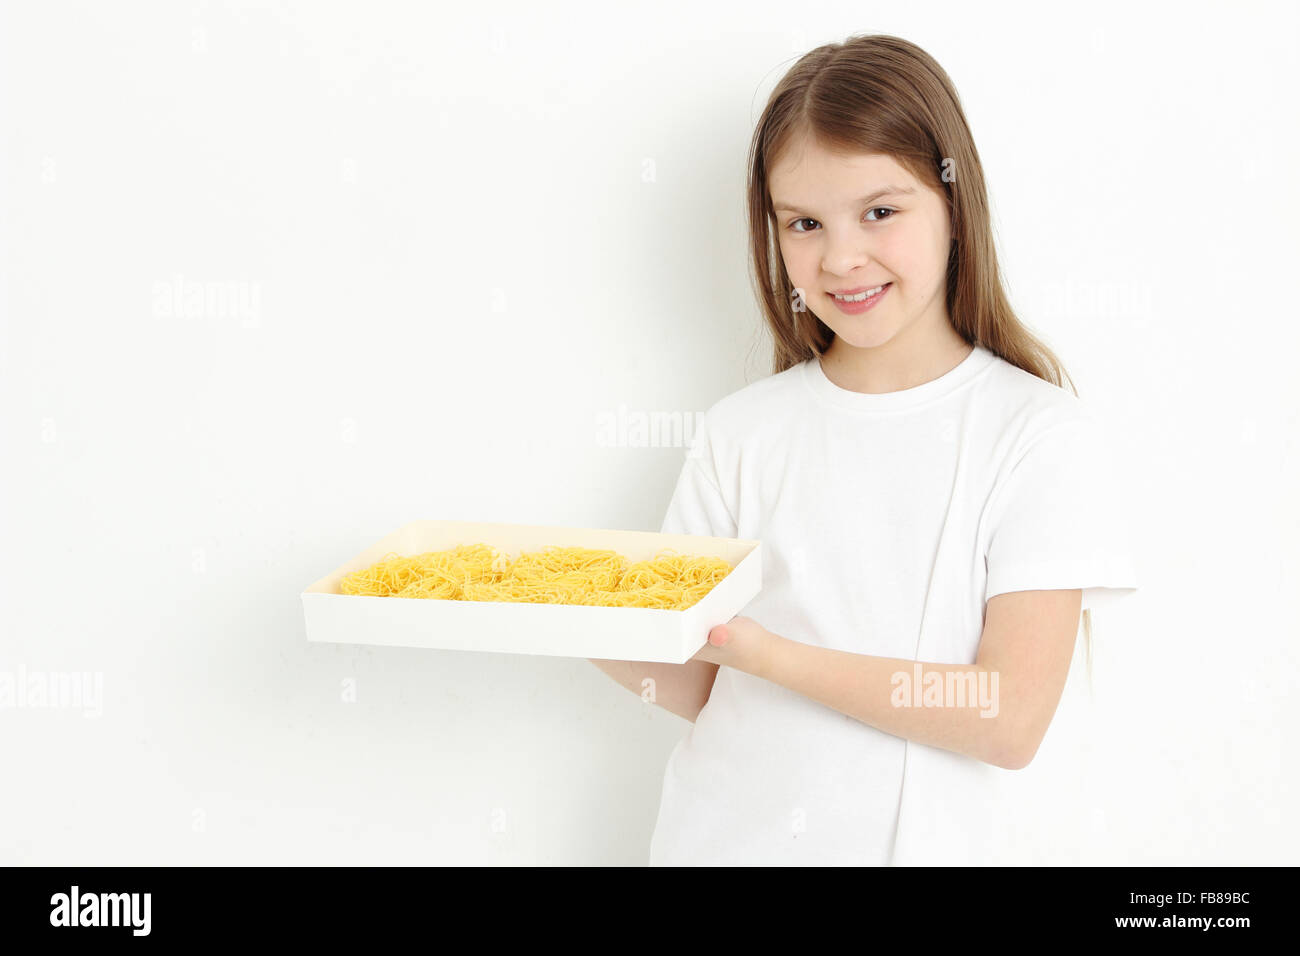 Joyful little girl holding pasta Stock Photo